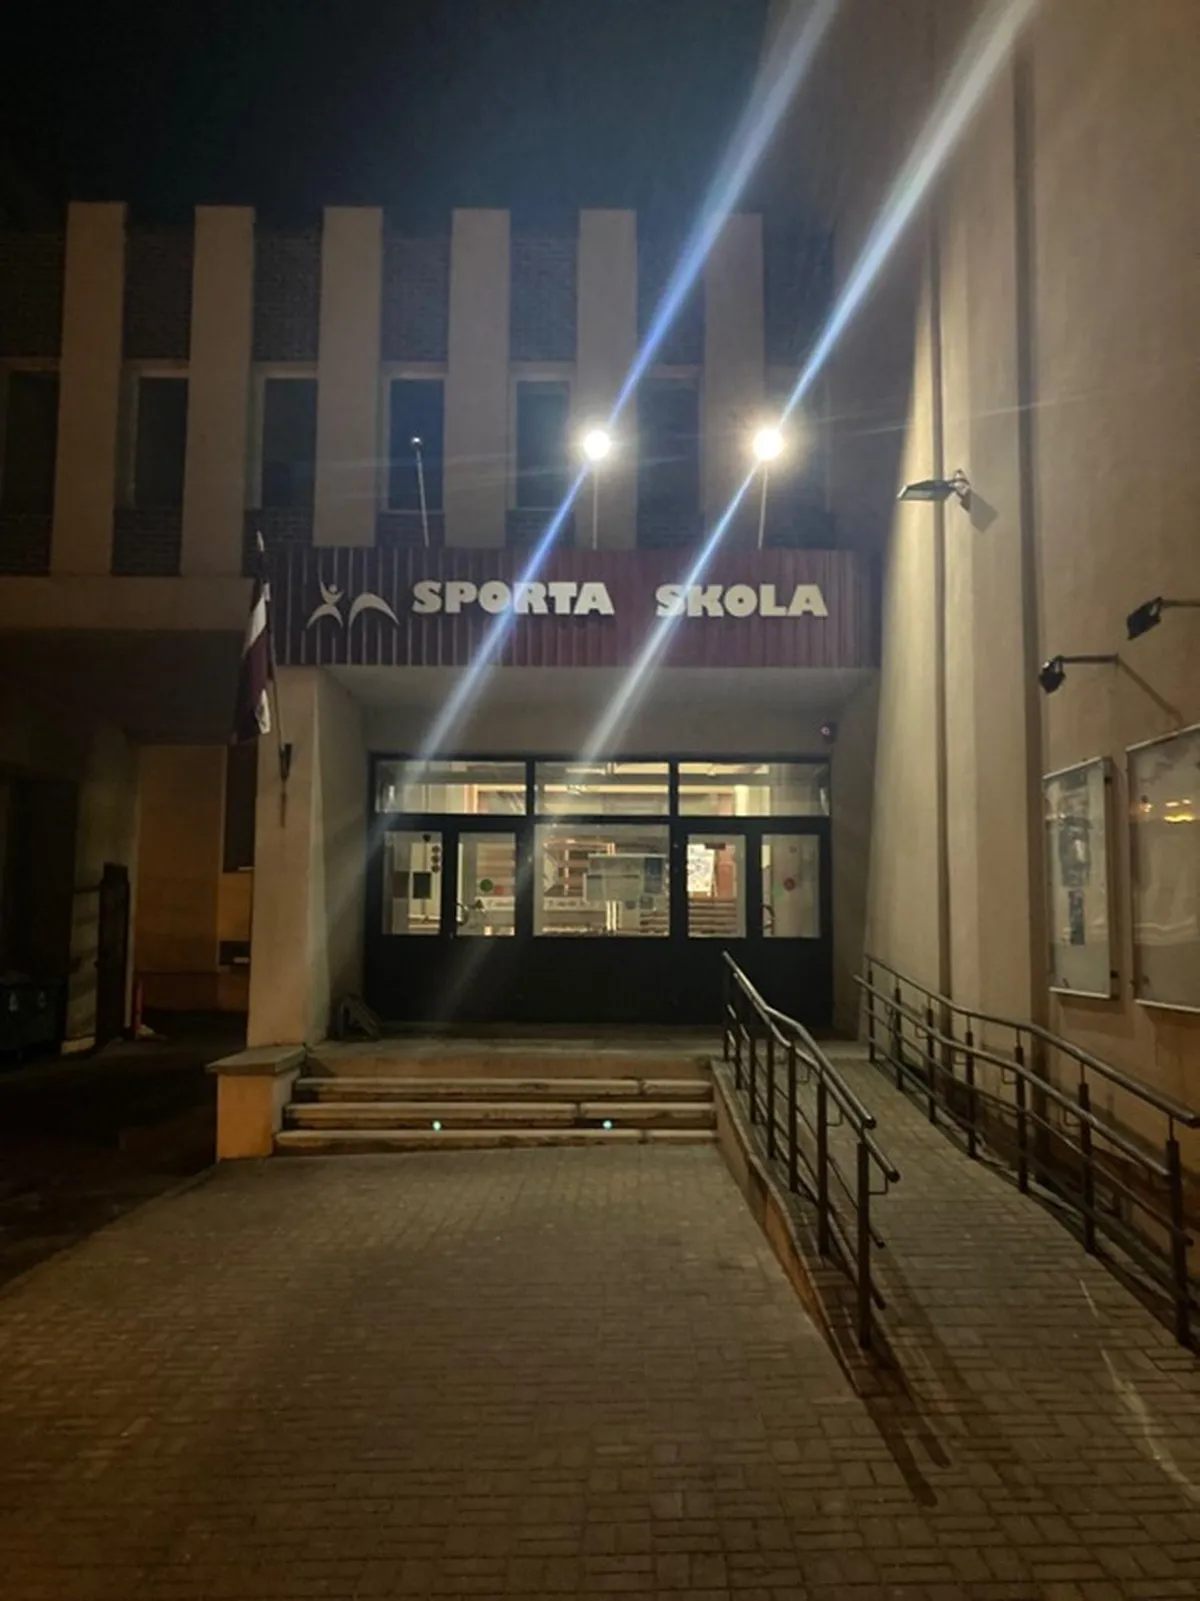 Attēlā: Daugavpils sporta skola, kurā Kasperovičs bija noskatījis vairākus potenciālos upurus. 2023.gada marts. Foto: